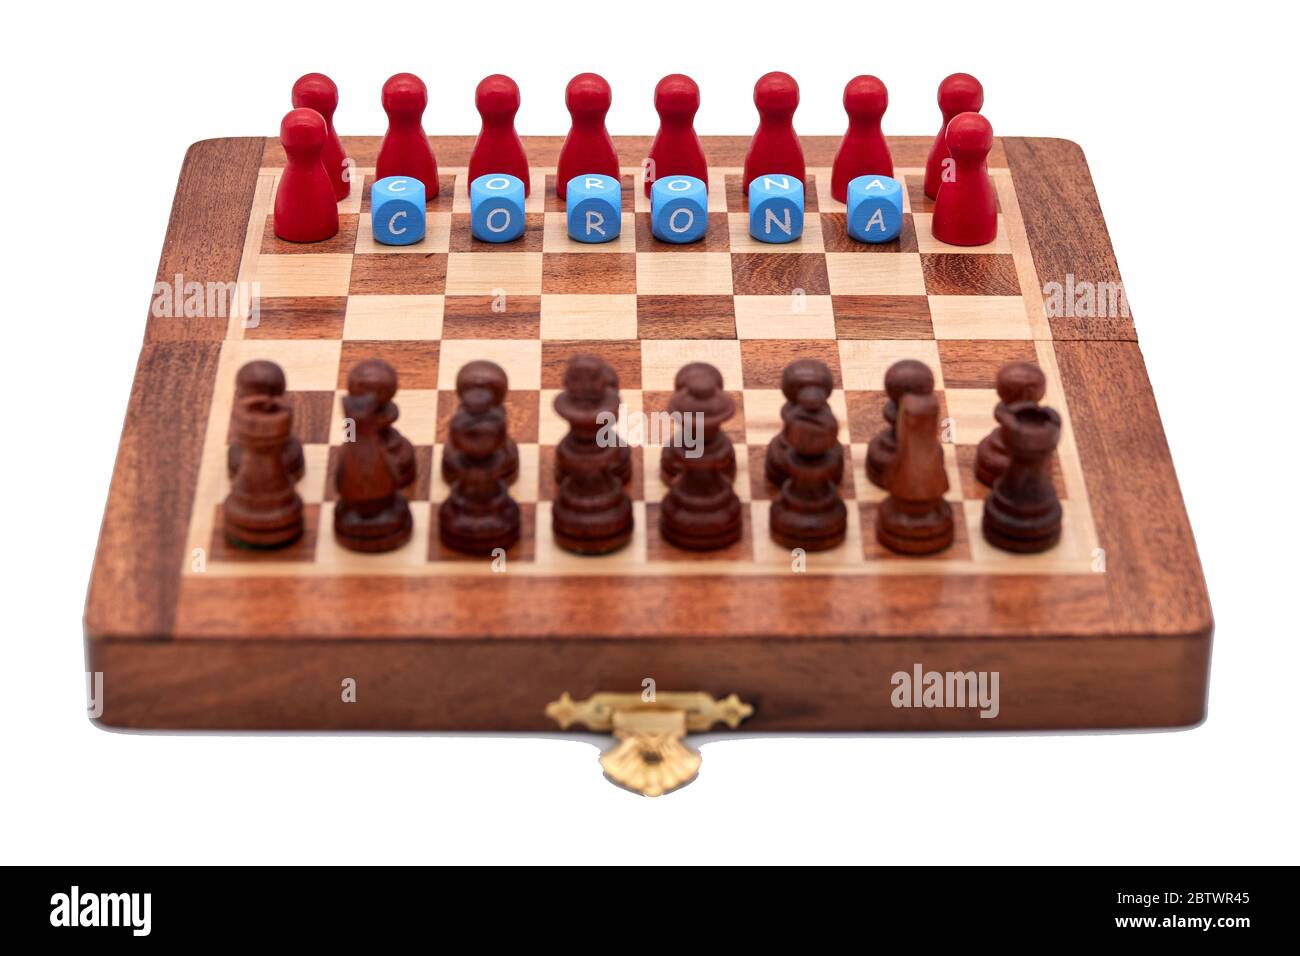 Les pièces d'échecs classiques noires rivalisent avec les joueurs de corona rouge Banque D'Images